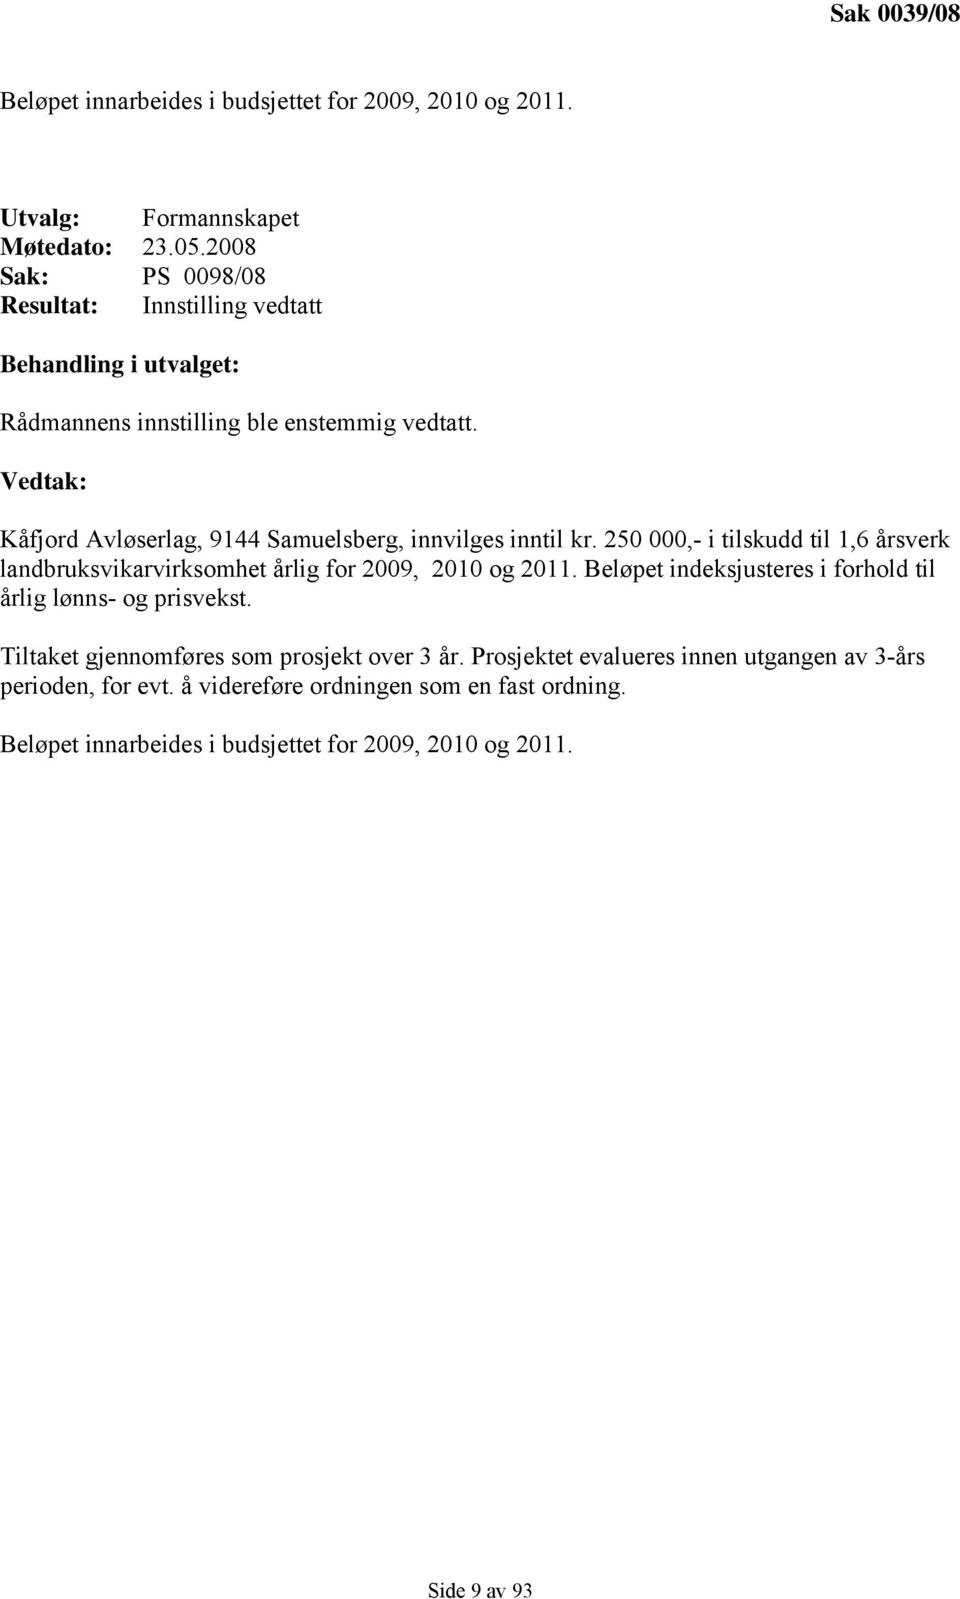 Vedtak: Kåfjord Avløserlag, 9144 Samuelsberg, innvilges inntil kr. 250 000,- i tilskudd til 1,6 årsverk landbruksvikarvirksomhet årlig for 2009, 2010 og 2011.